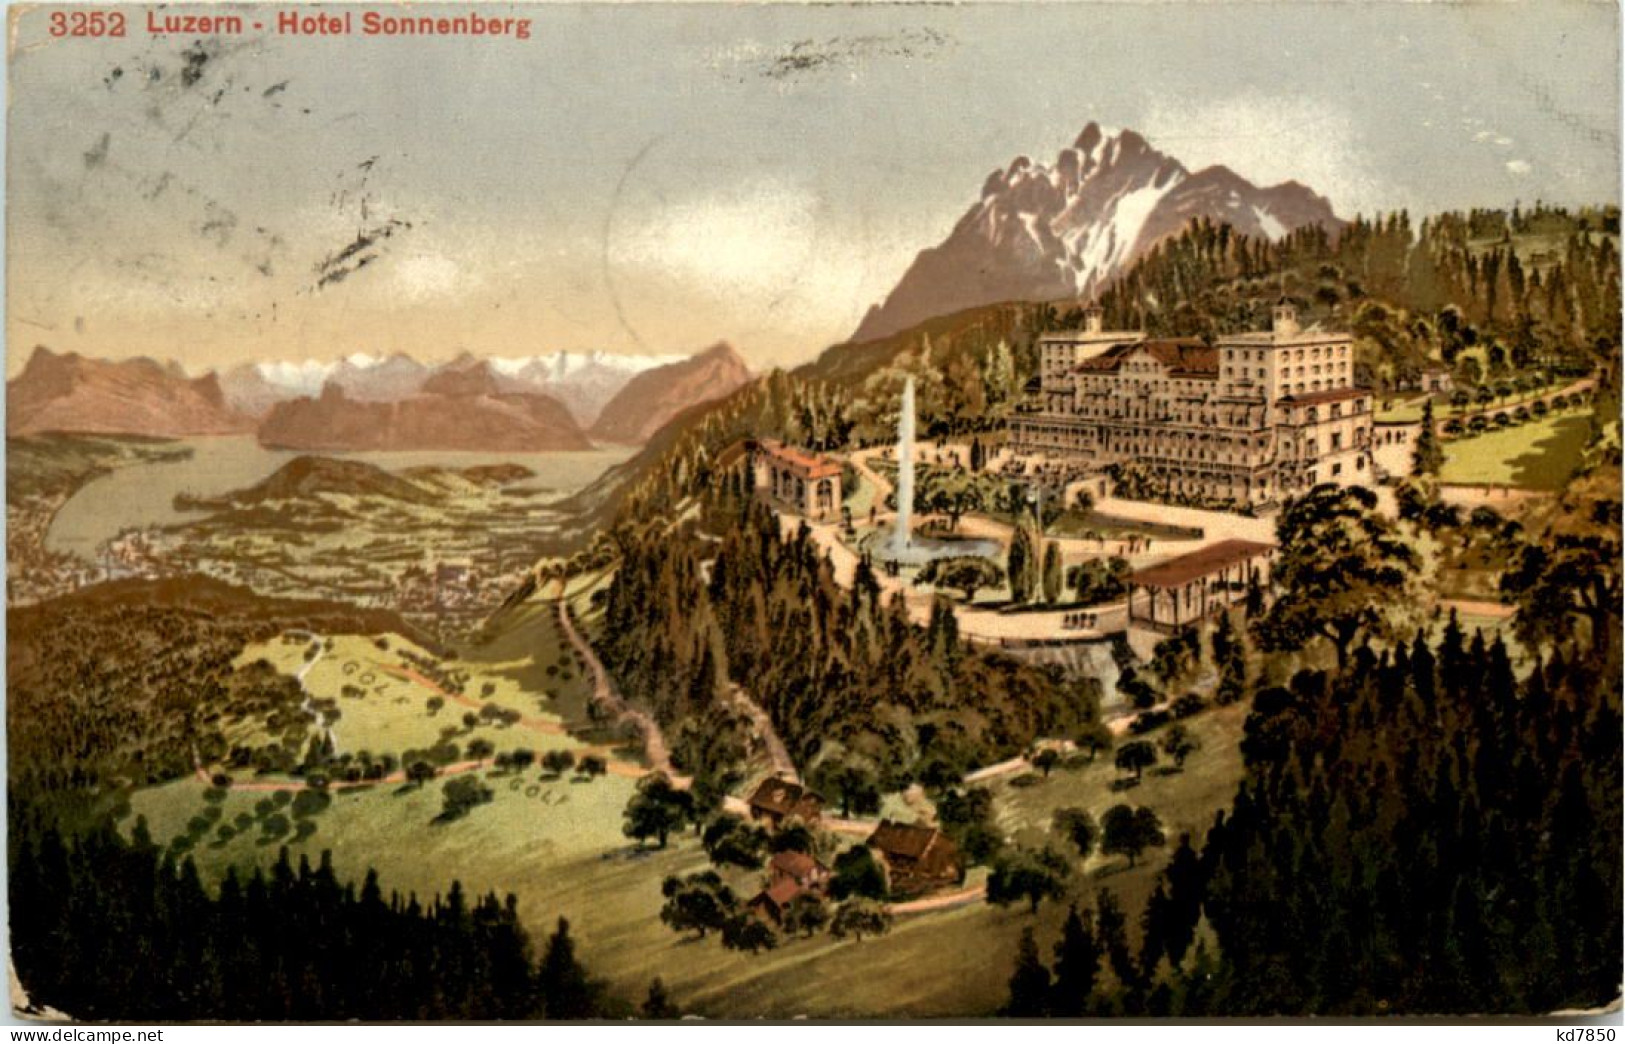 Luzern, Hotel Sonnenberg - Lucerne